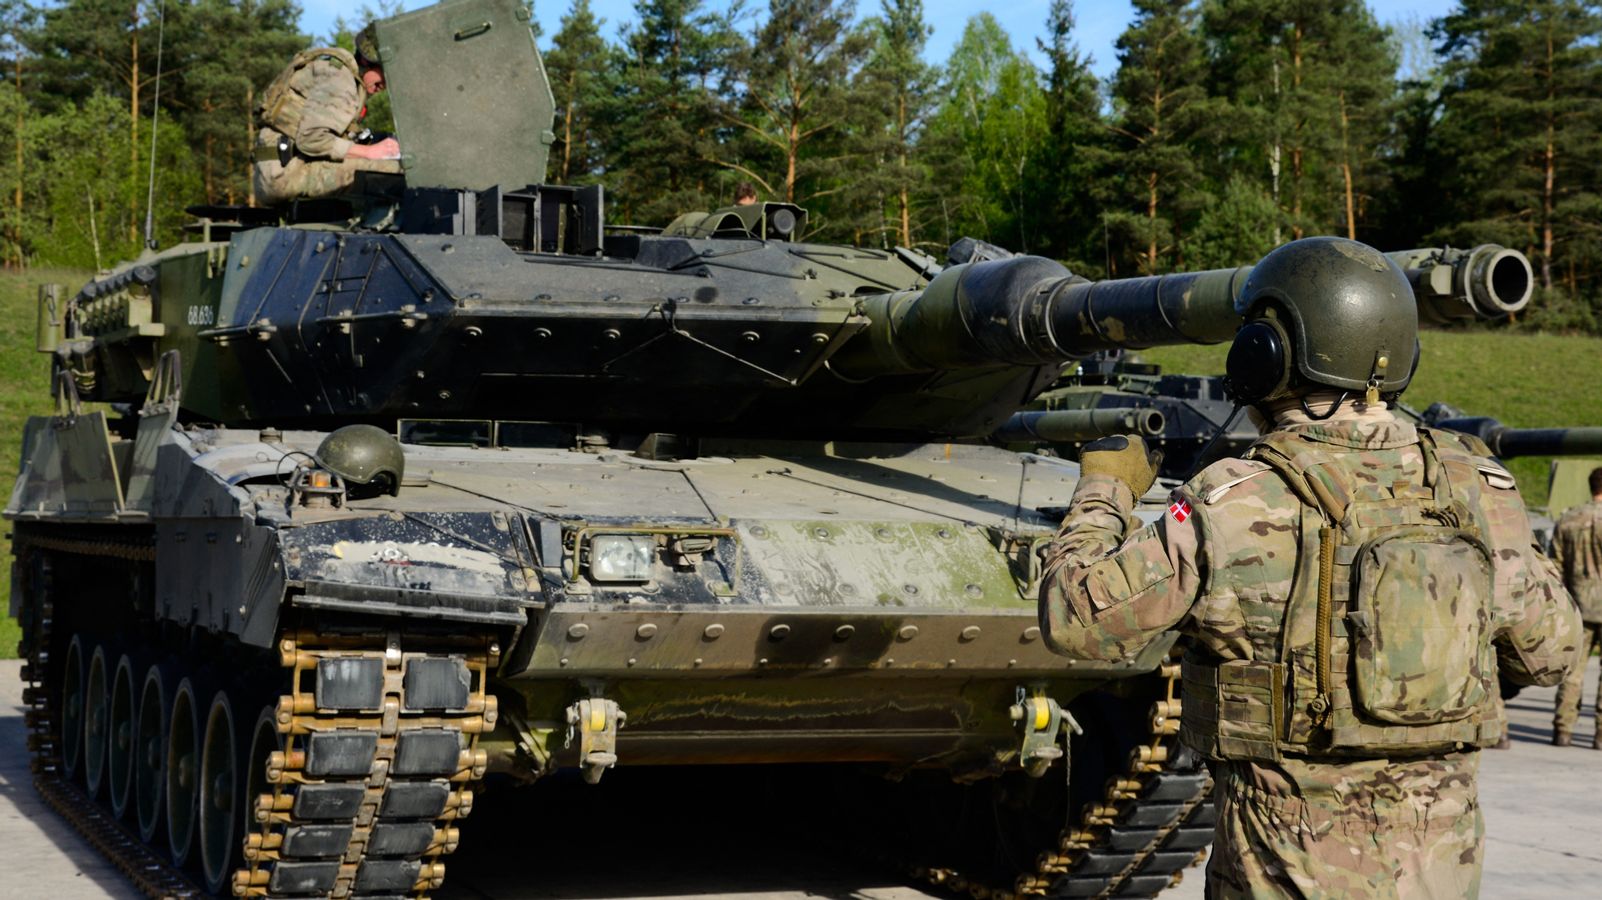 Debata czołgów prowadzi do konfliktu koalicyjnego i zniecierpliwienia za granicą